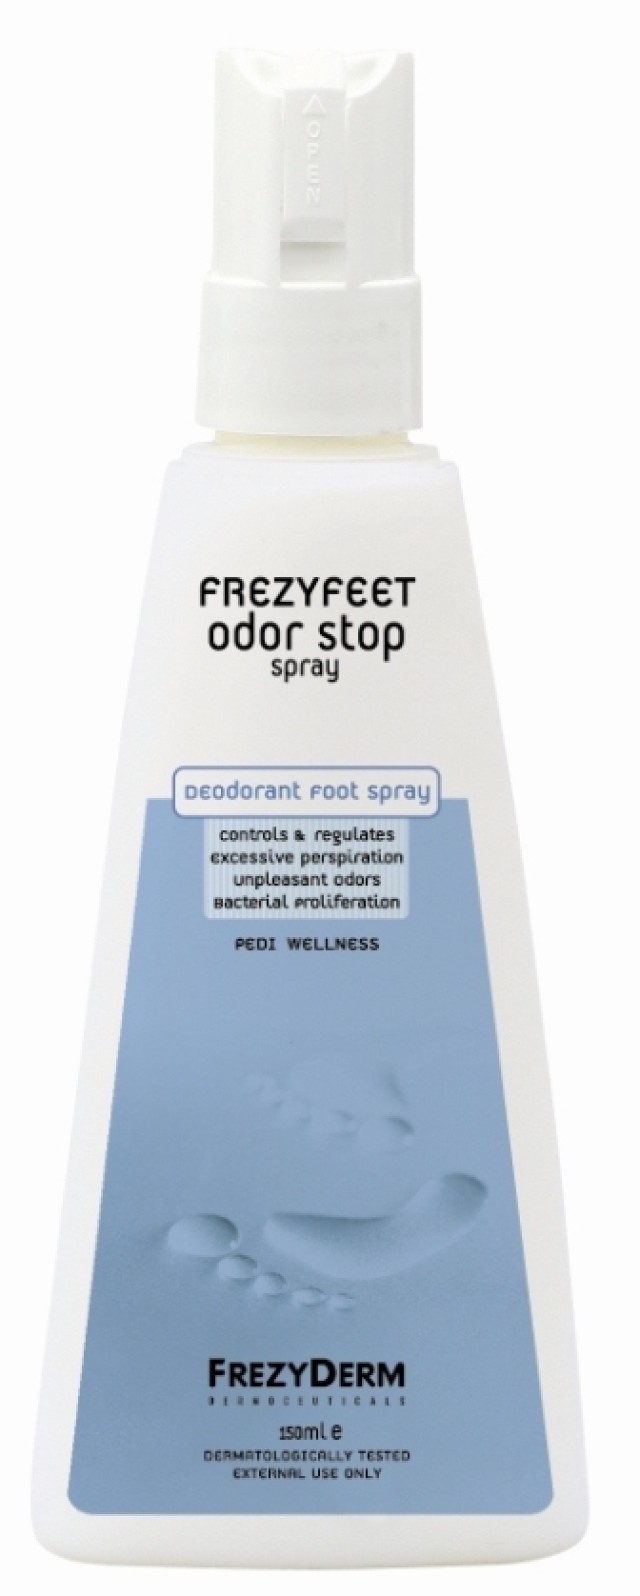 Frezyderm Frezyfeet Odor Stop Spray 150 ml product photo